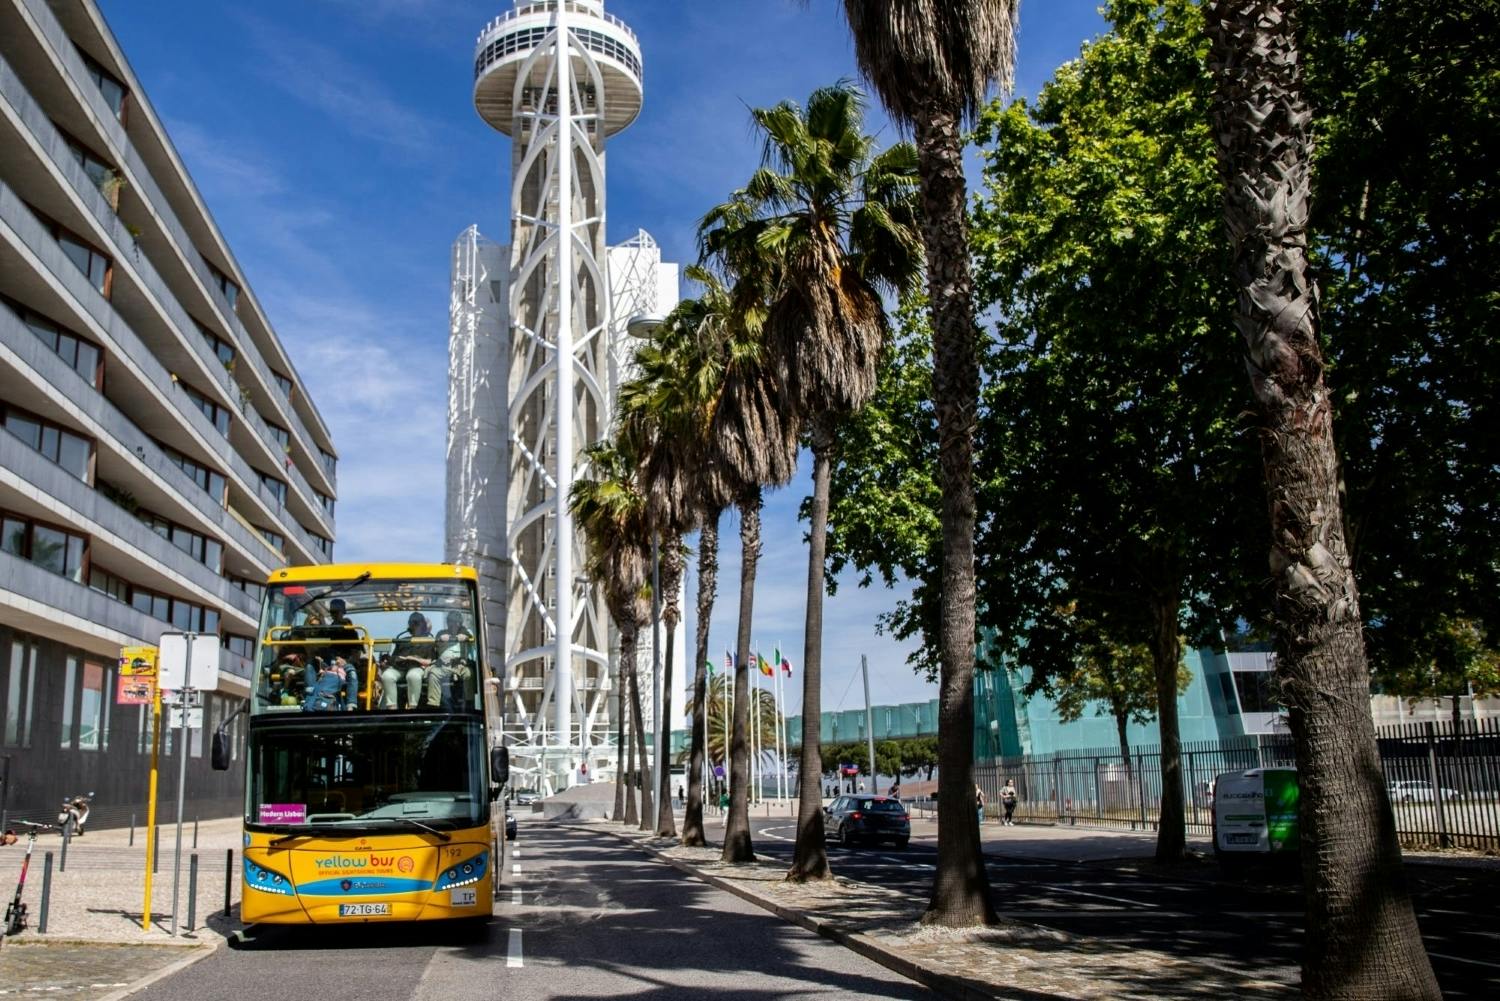 Wycieczka nowoczesnym autobusem po Lizbonie